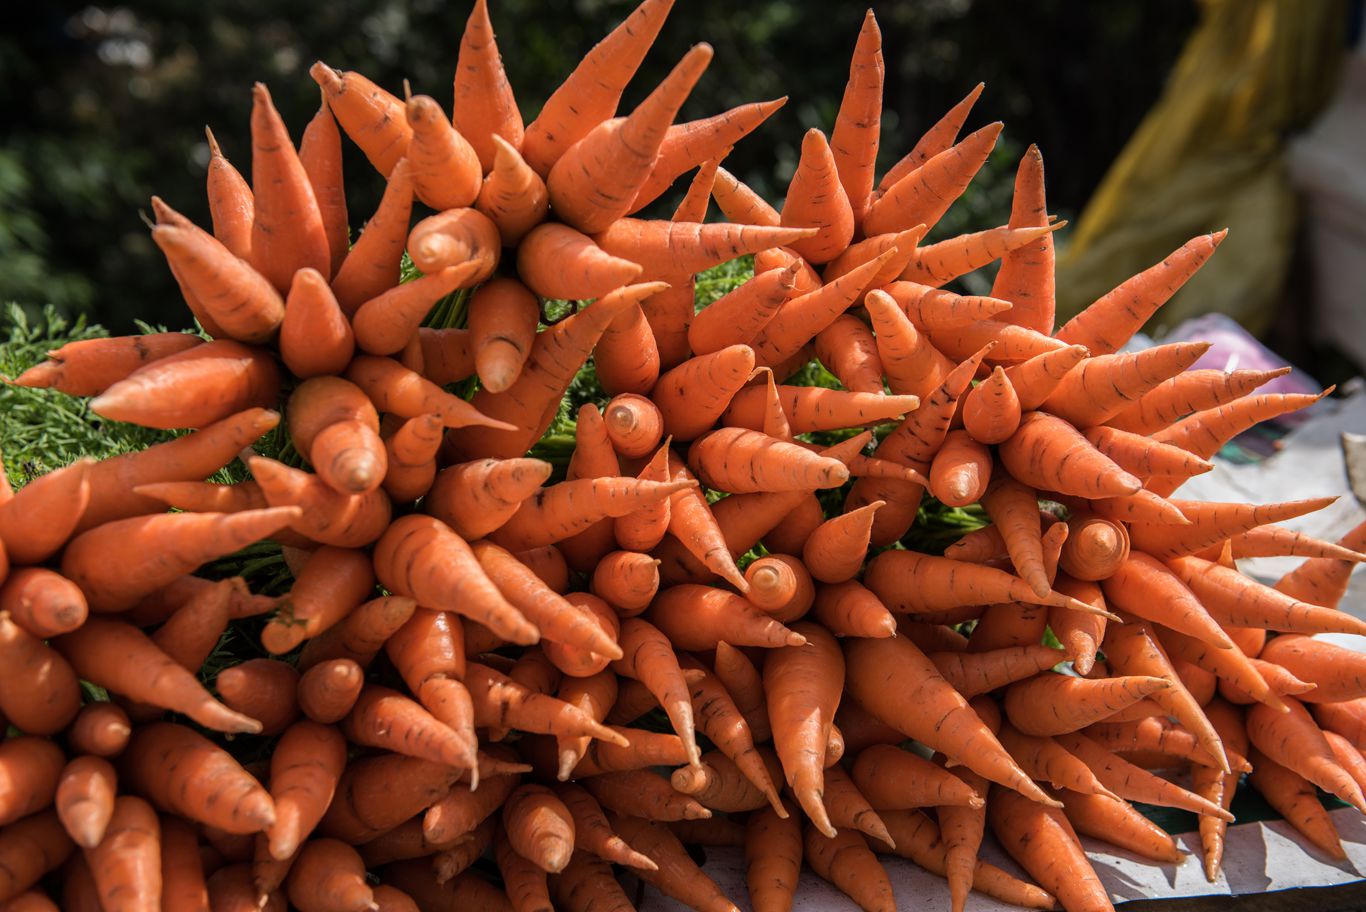 Fresh Carrots in Market